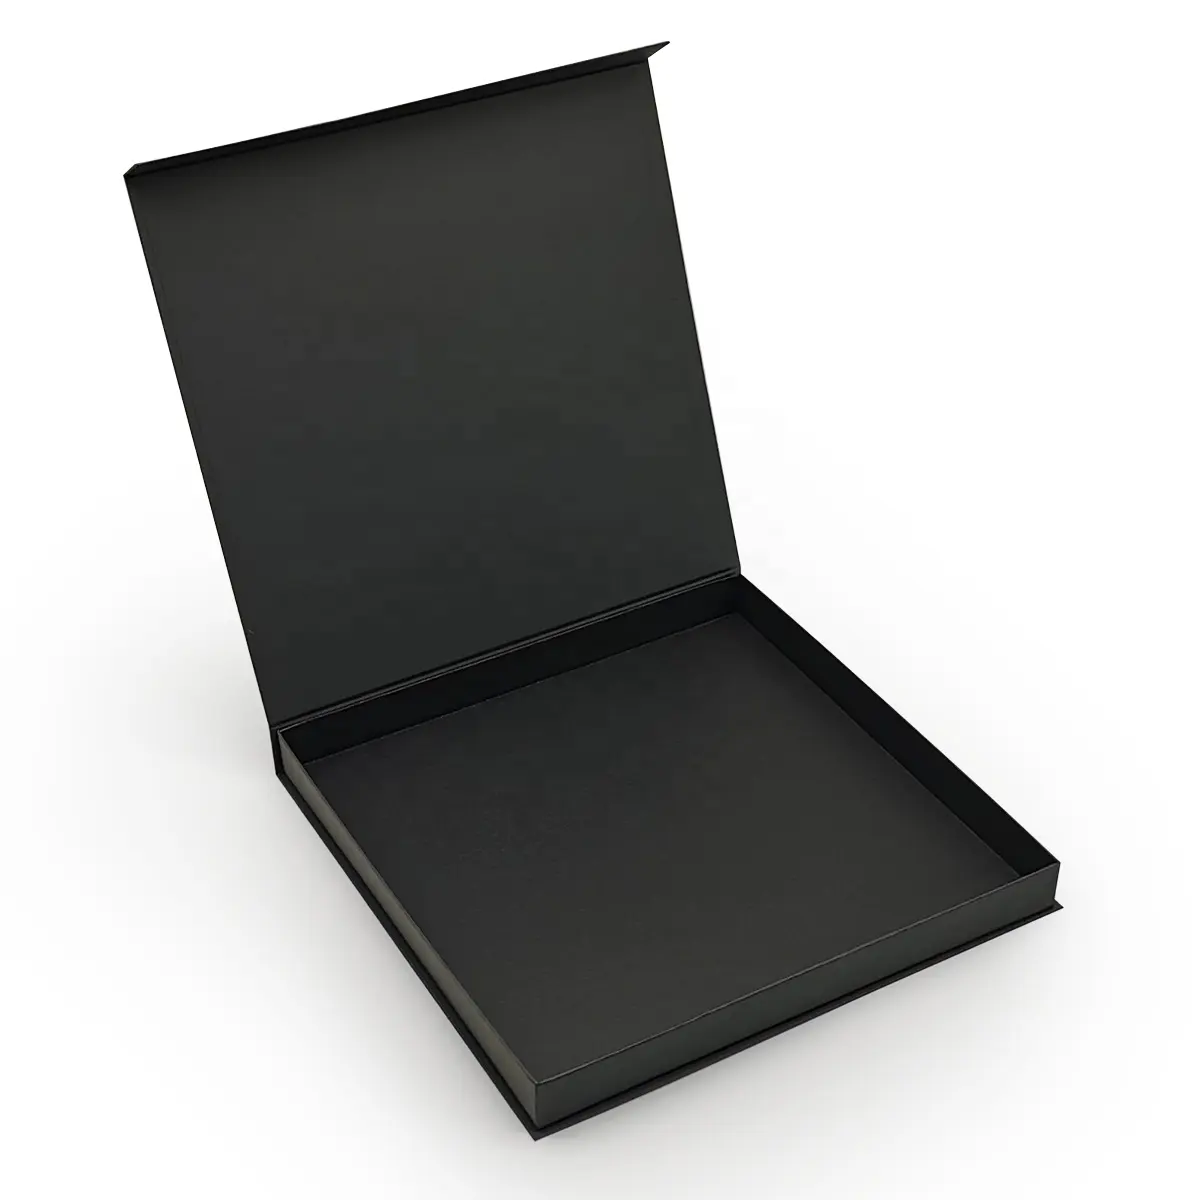 맞춤형 로고 럭셔리 매트 딱딱한 블랙 선물 상자 마그네틱 제품 폐쇄 골판지 종이 상자 뚜껑이있는 접이식 상자